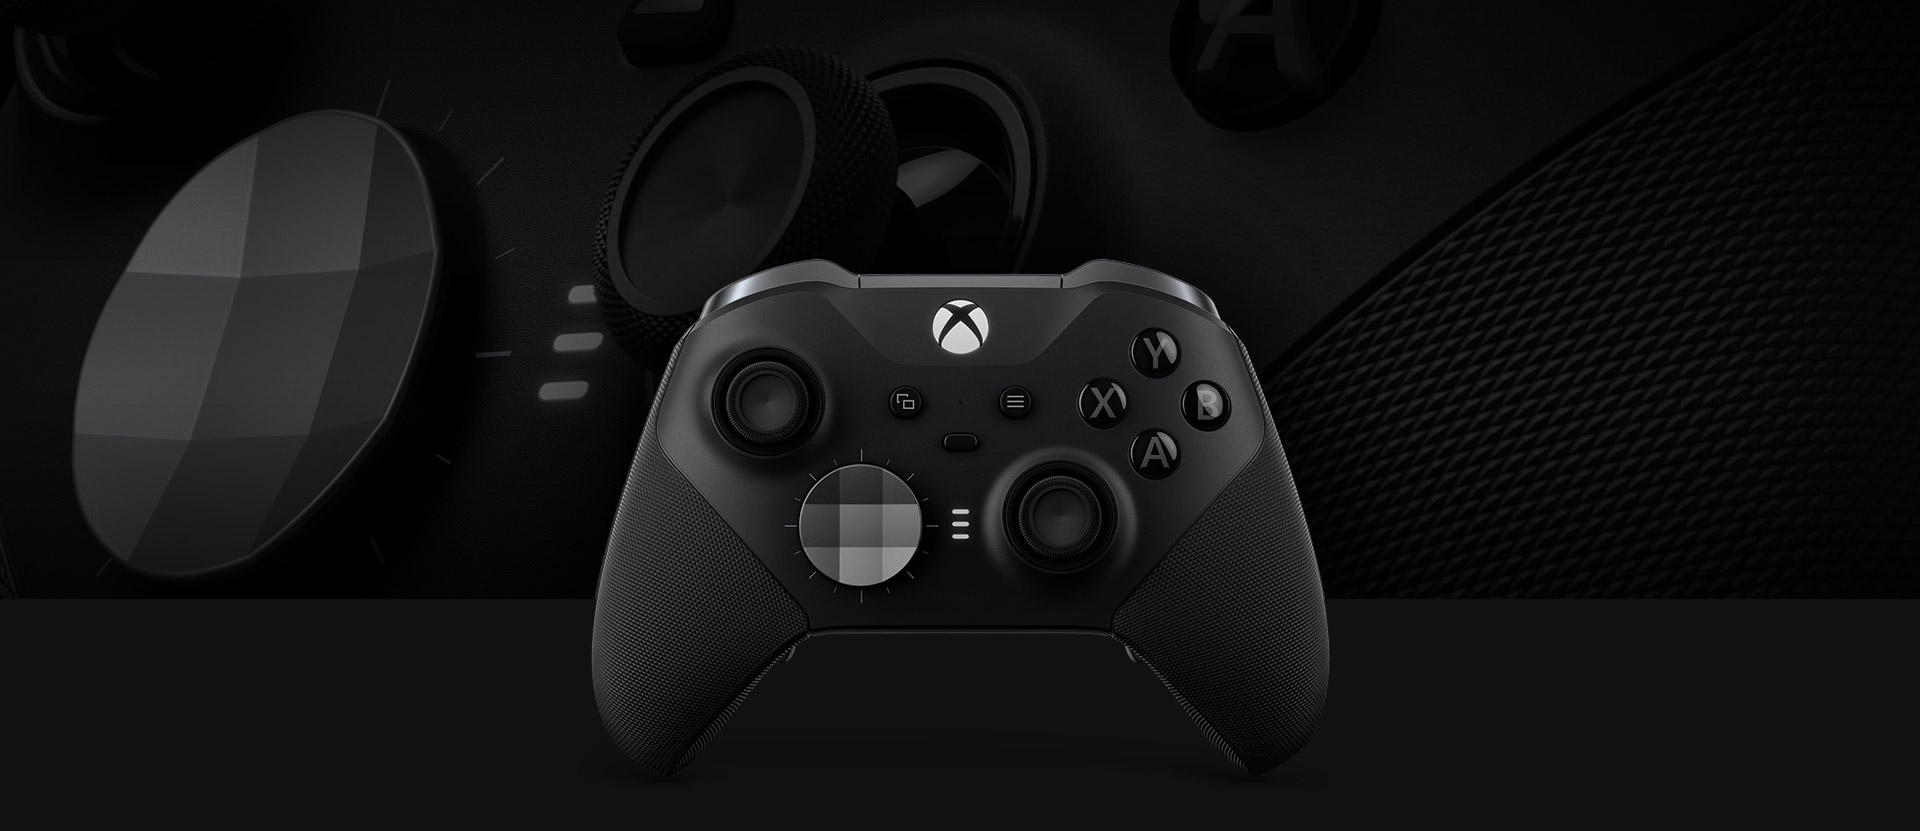 Vista frontal del Mando inalámbrico Xbox Elite Series 2 con un primer plano del mando en segundo plano